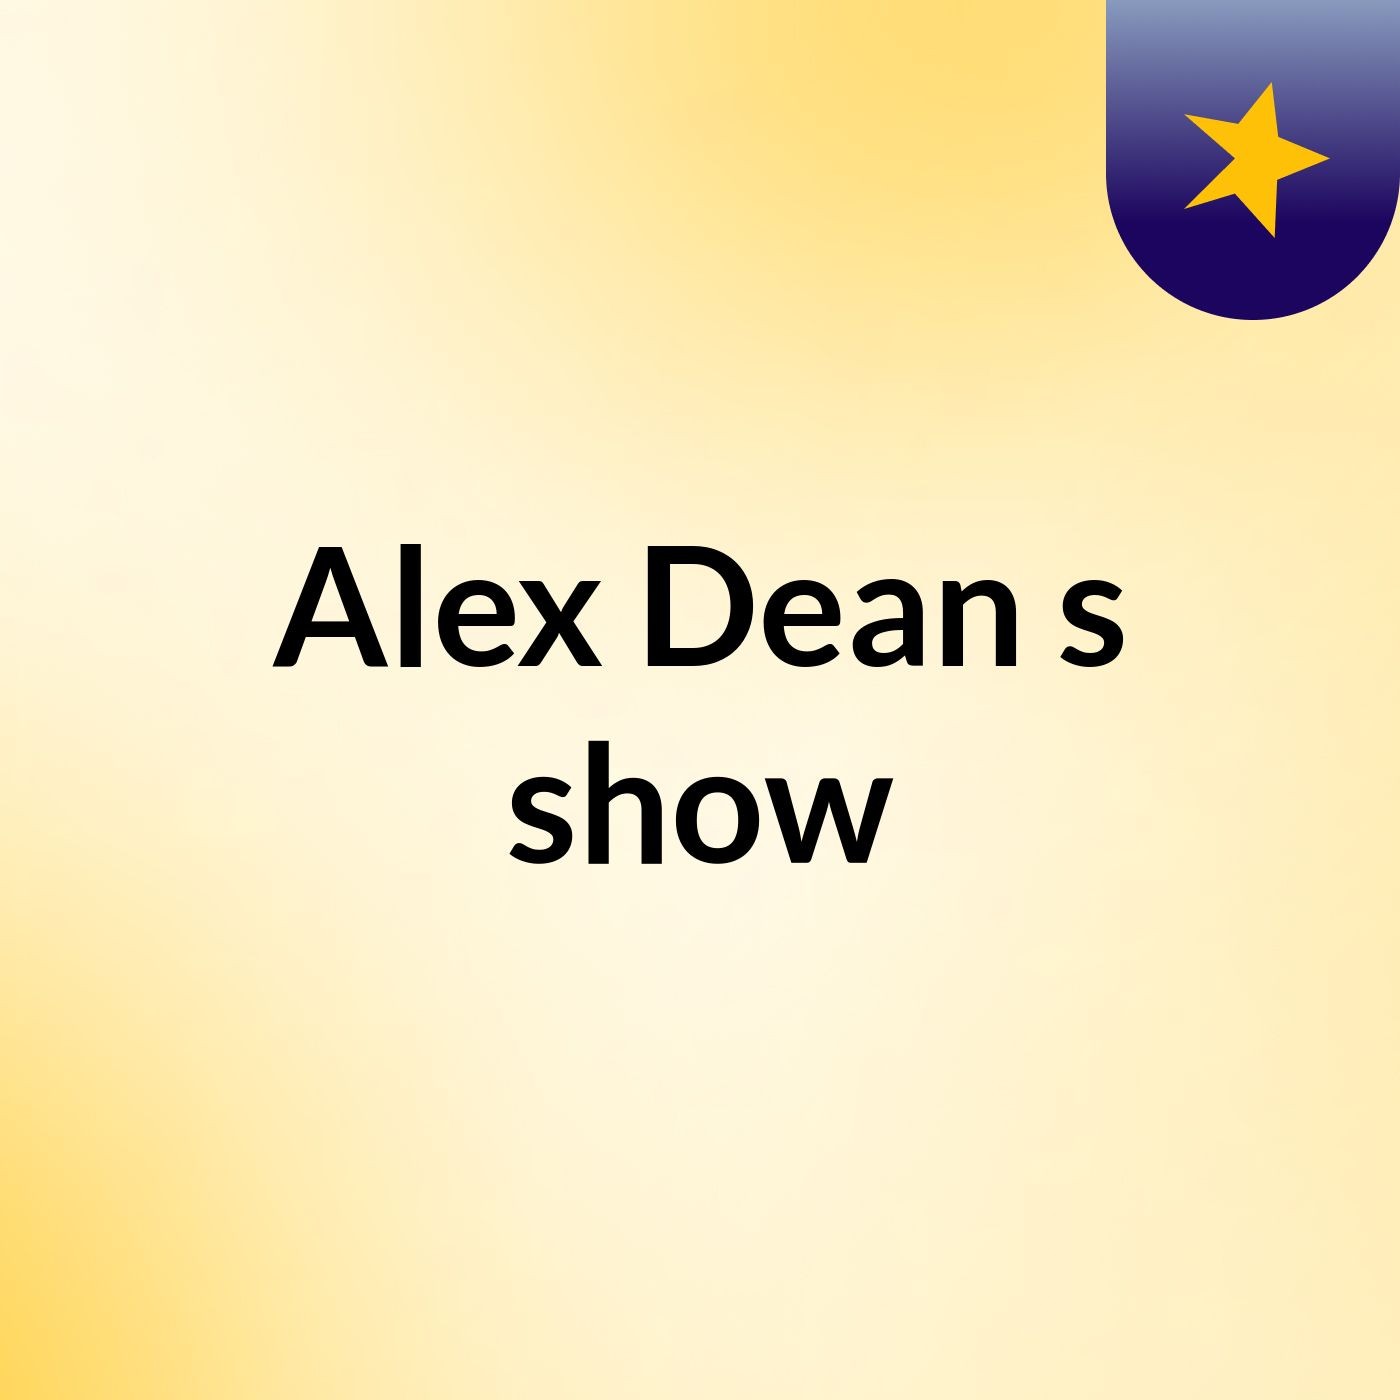 Alex Dean's show